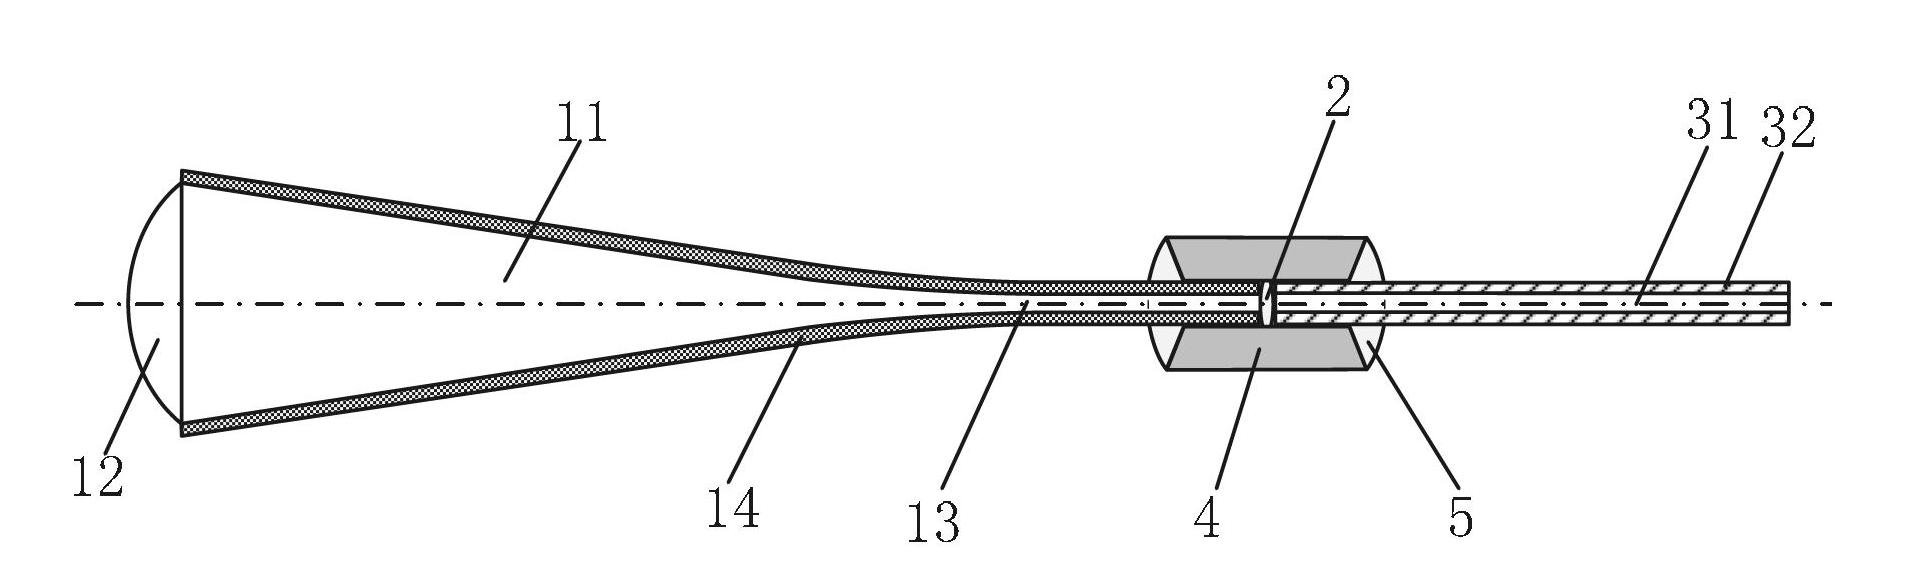 Large-caliber light beam coupler